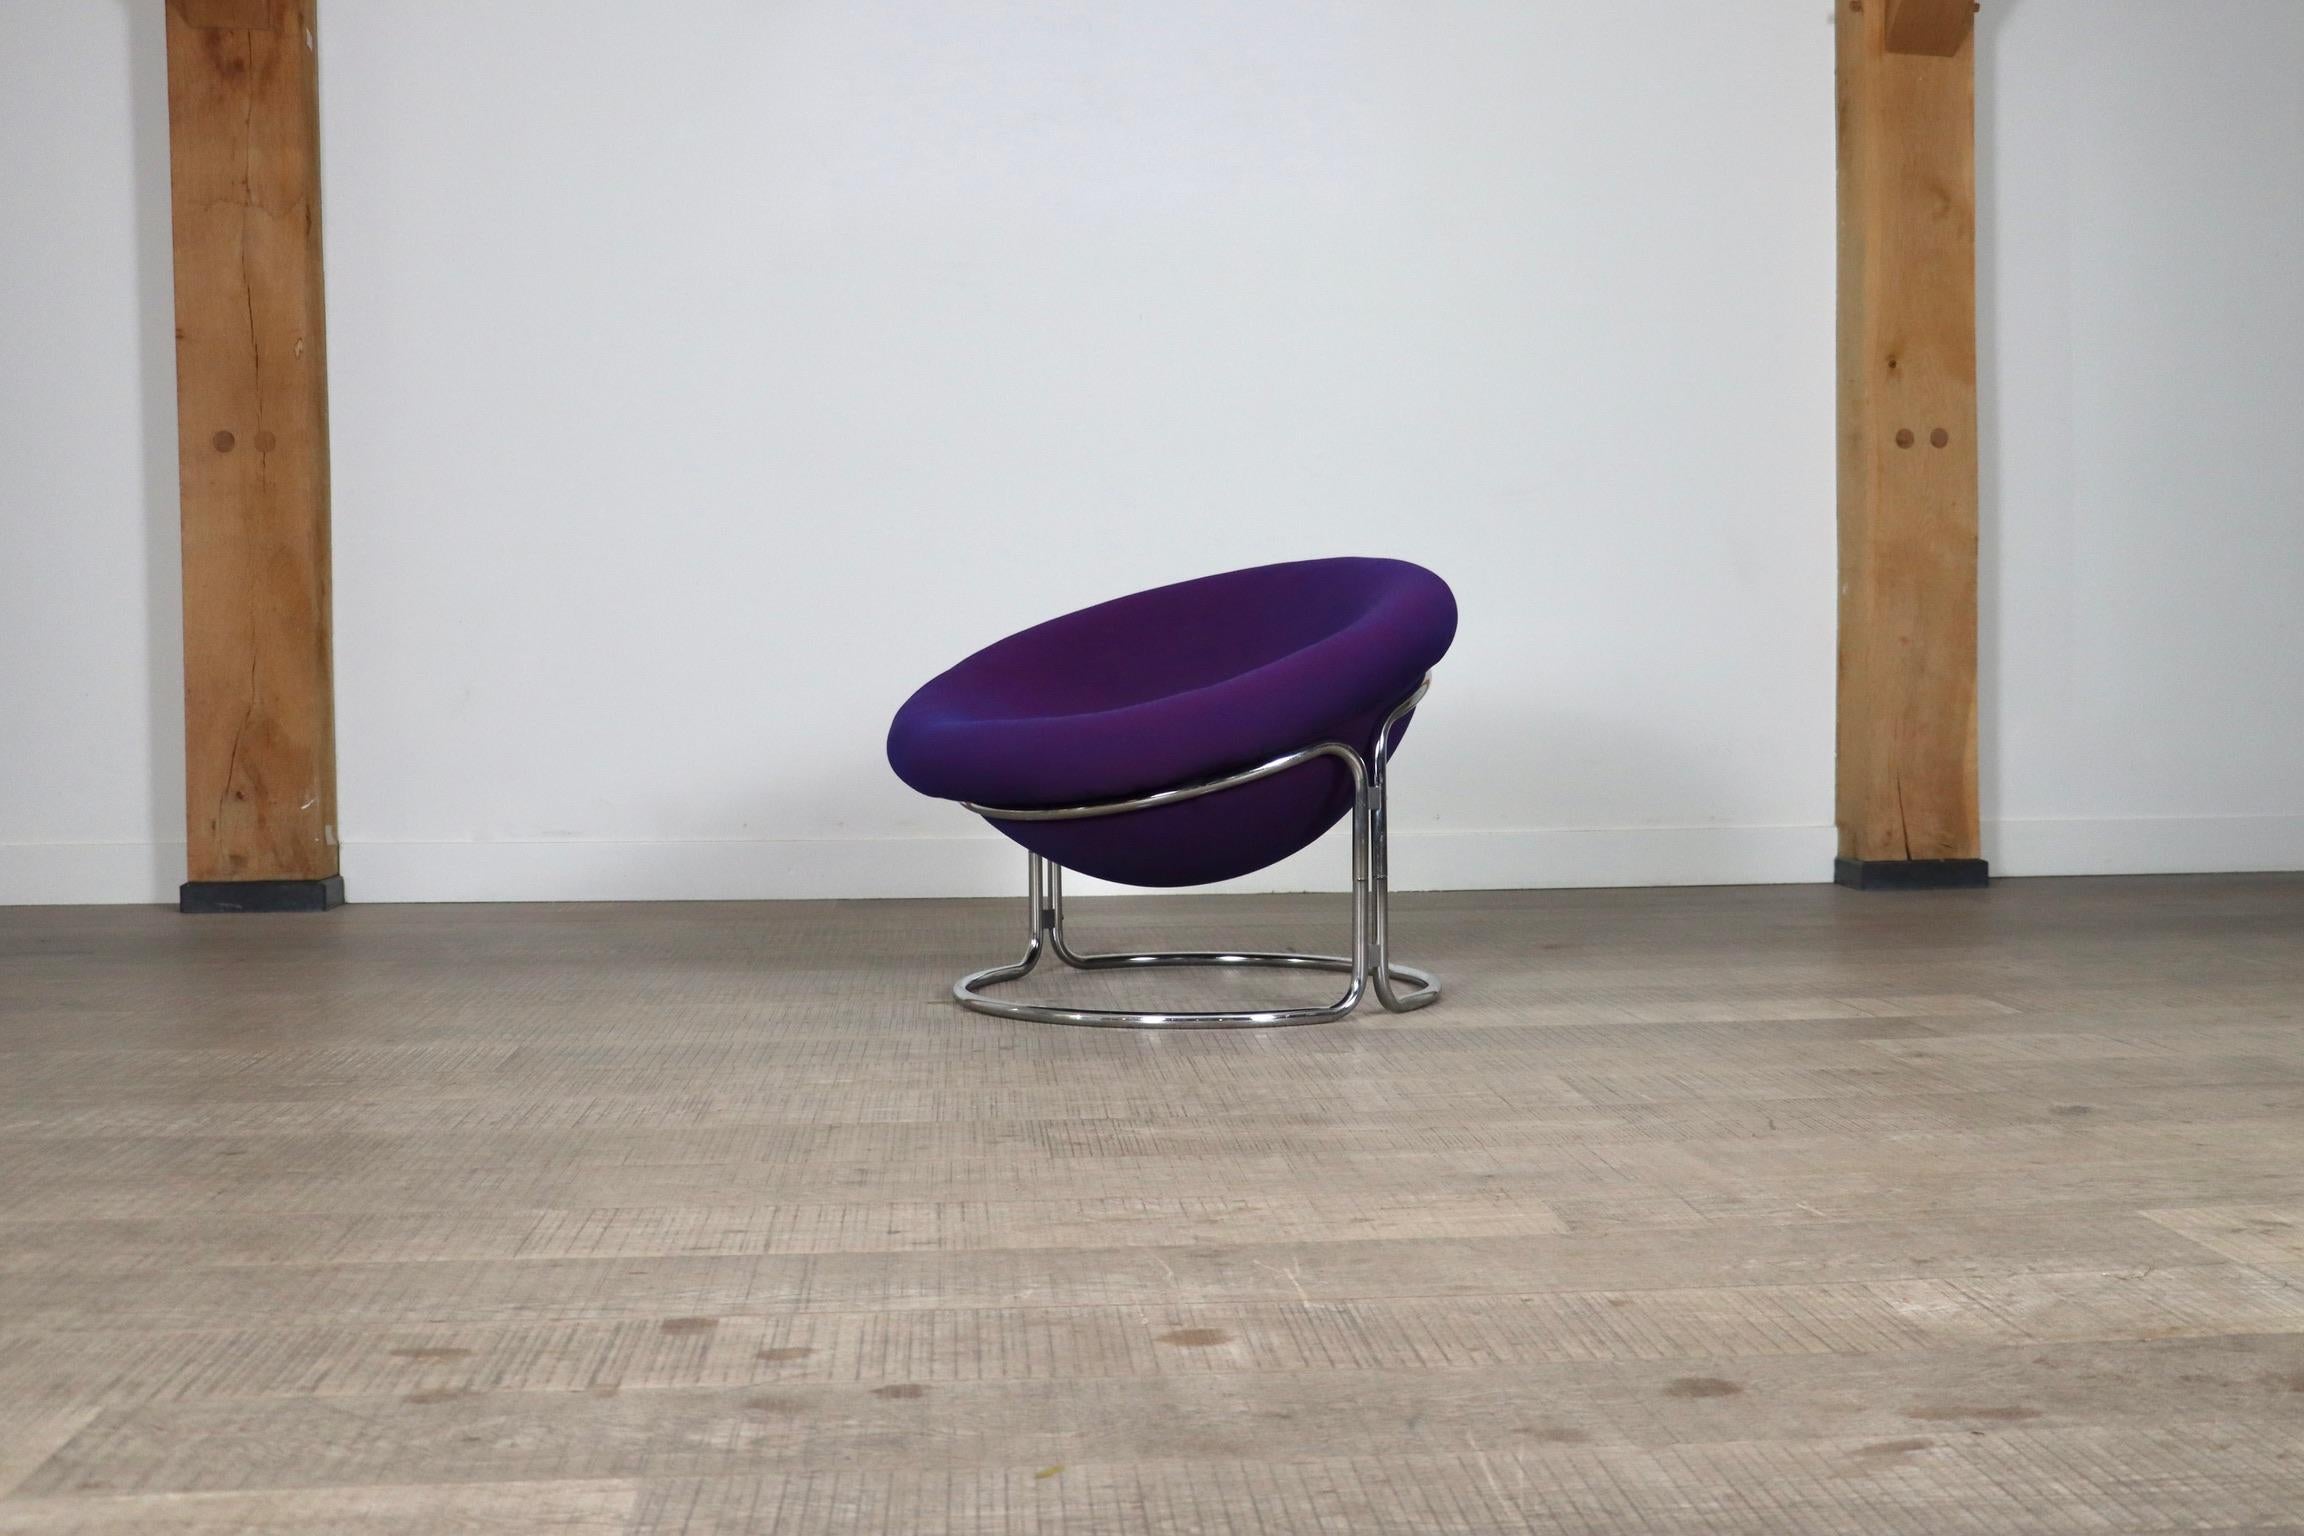 Incroyable et confortable chaise longue conçue par Luigi Colani et fabriquée par Kusch+Co, Allemagne 1968. Ce modèle est très rare, car sa production a été limitée à quelques années seulement. La structure en métal tubulaire chromé ajoute à